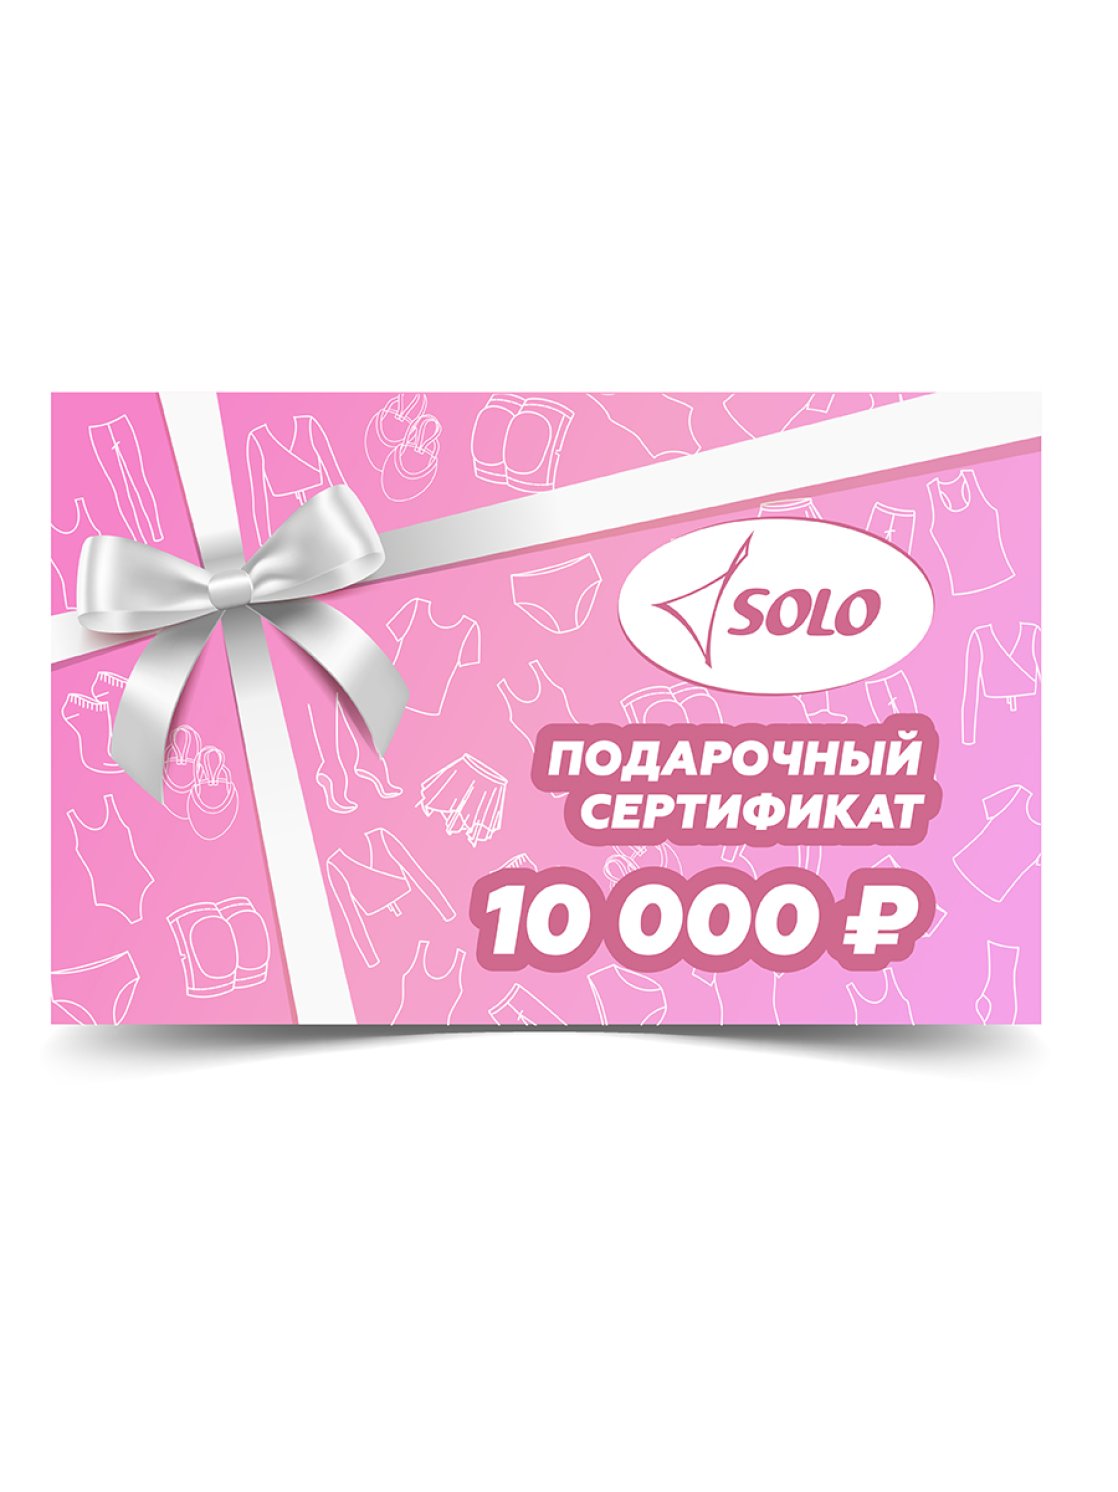 Электронный подарочный сертификат номиналом 10 000 рублей